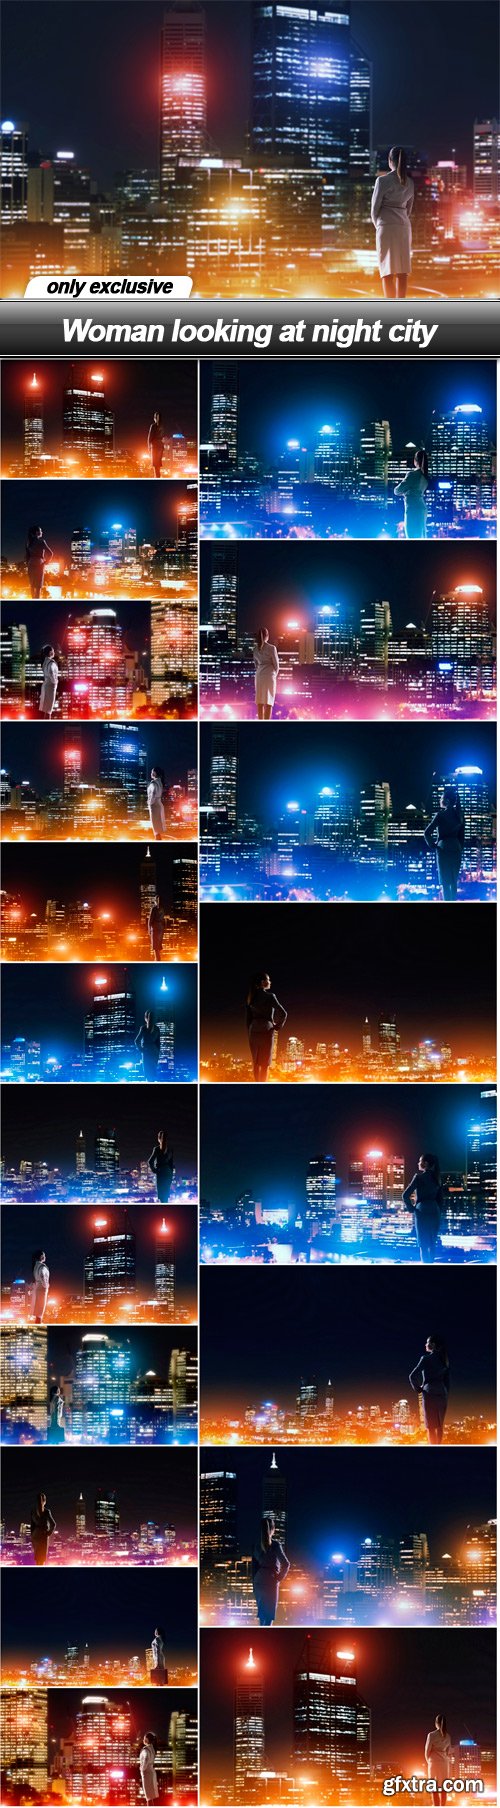 Woman looking at night city - 21 UHQ JPEG